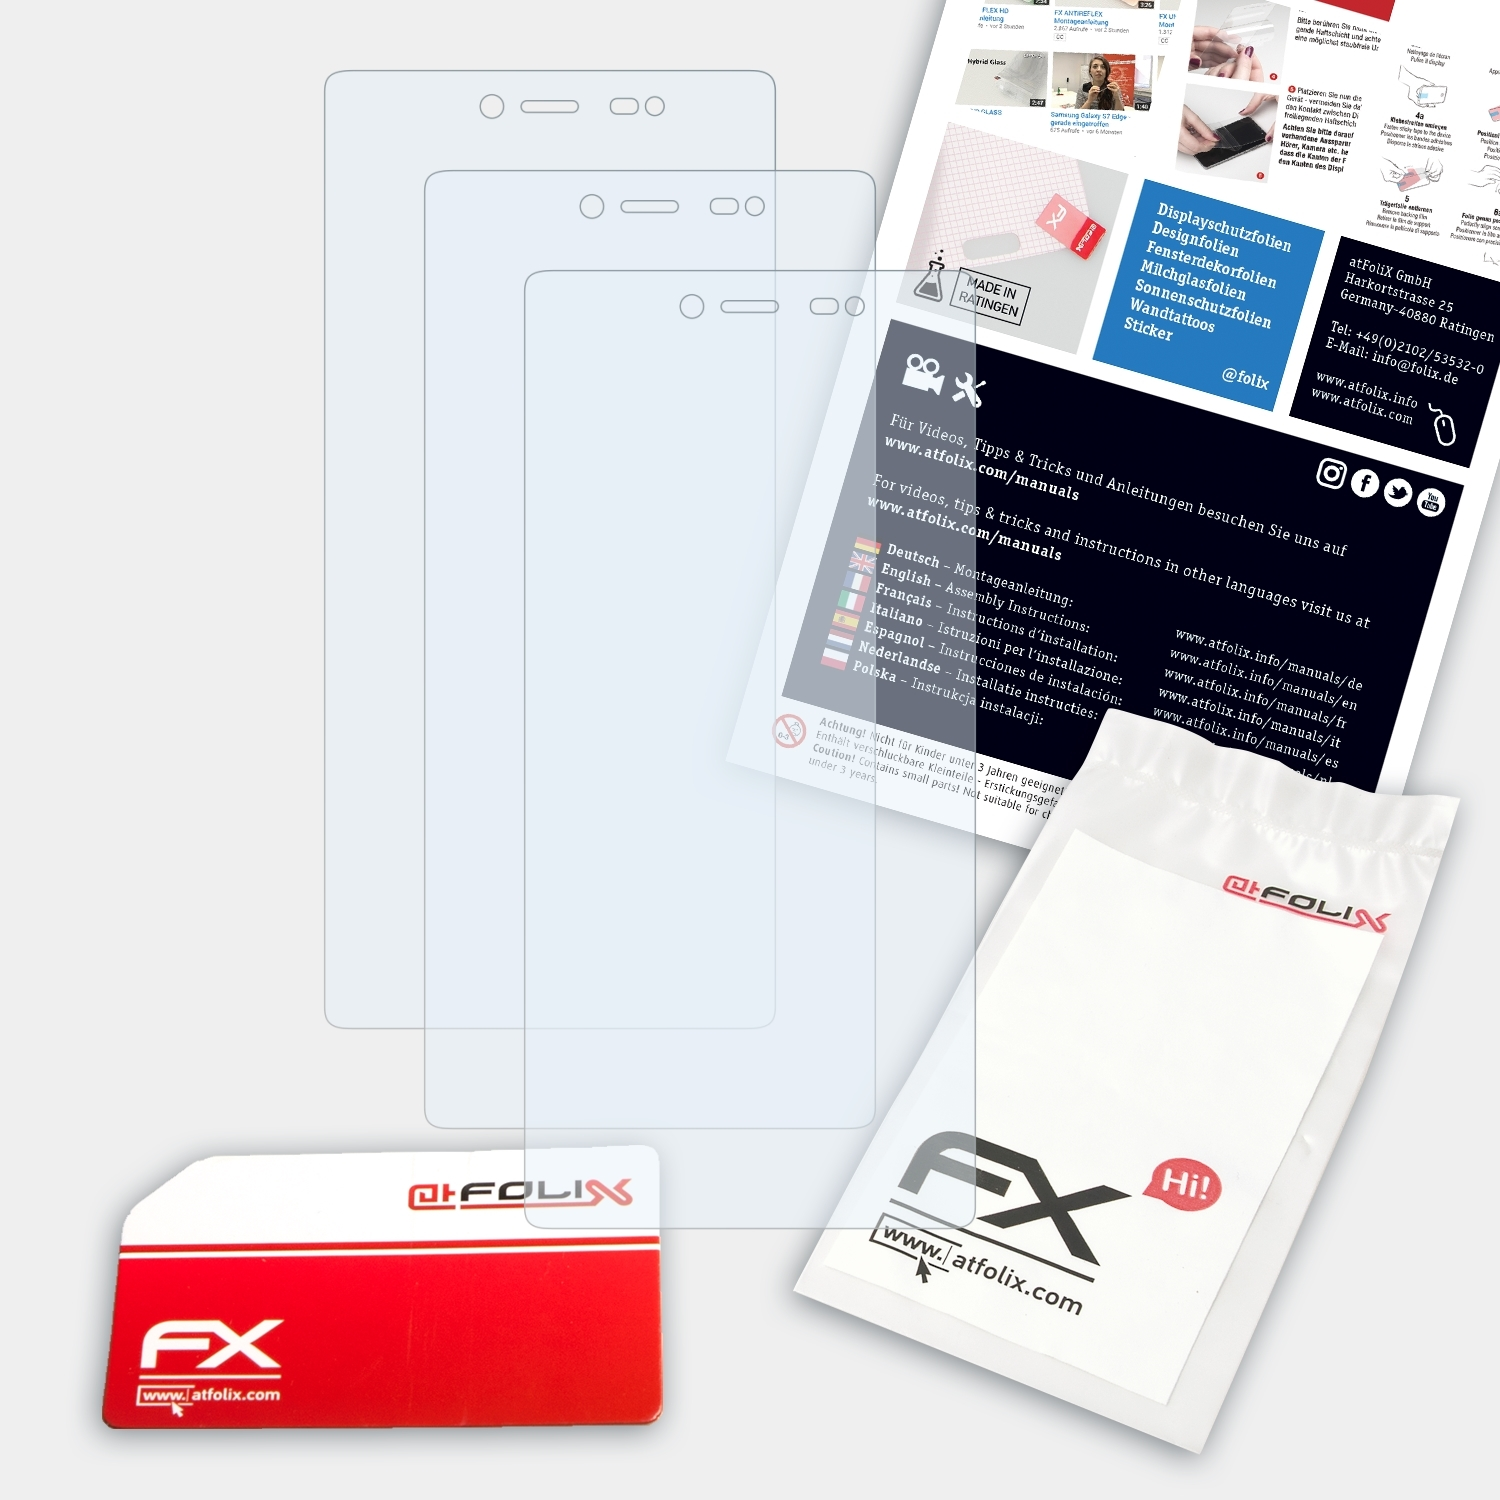 ATFOLIX 3x FX-Clear Displayschutz(für Fever 4G) Wiko